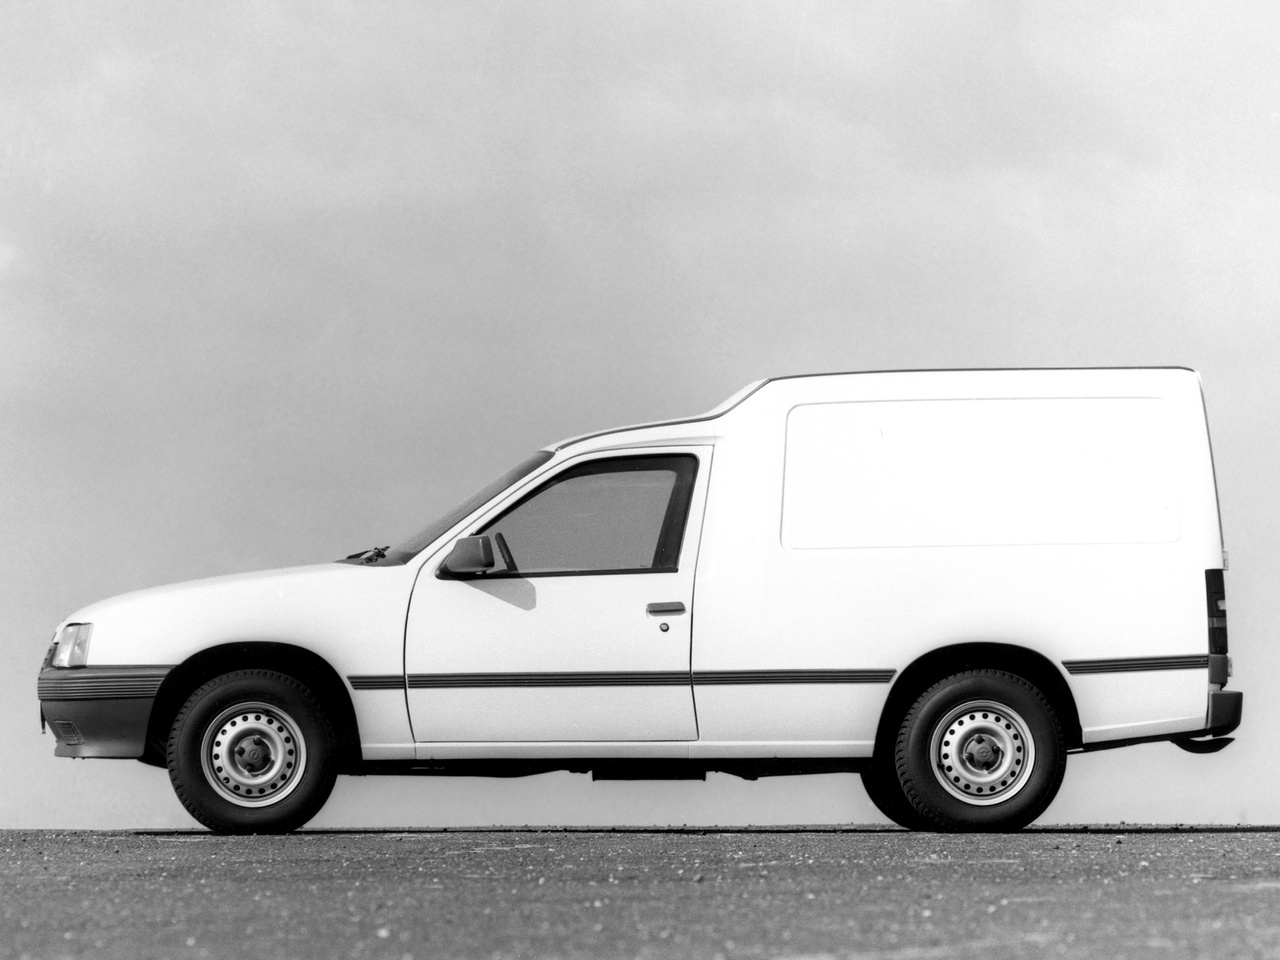 Opel Kadett Combo (E) '1985â€“89. Ð¥Ð°Ñ€Ð°ÐºÑ‚ÐµÑ€Ð¸ÑÑ‚Ð¸ÐºÐ¸ Ð¸Ð·Ð¾Ð±Ñ€Ð°Ð¶ÐµÐ½Ð¸Ñ: